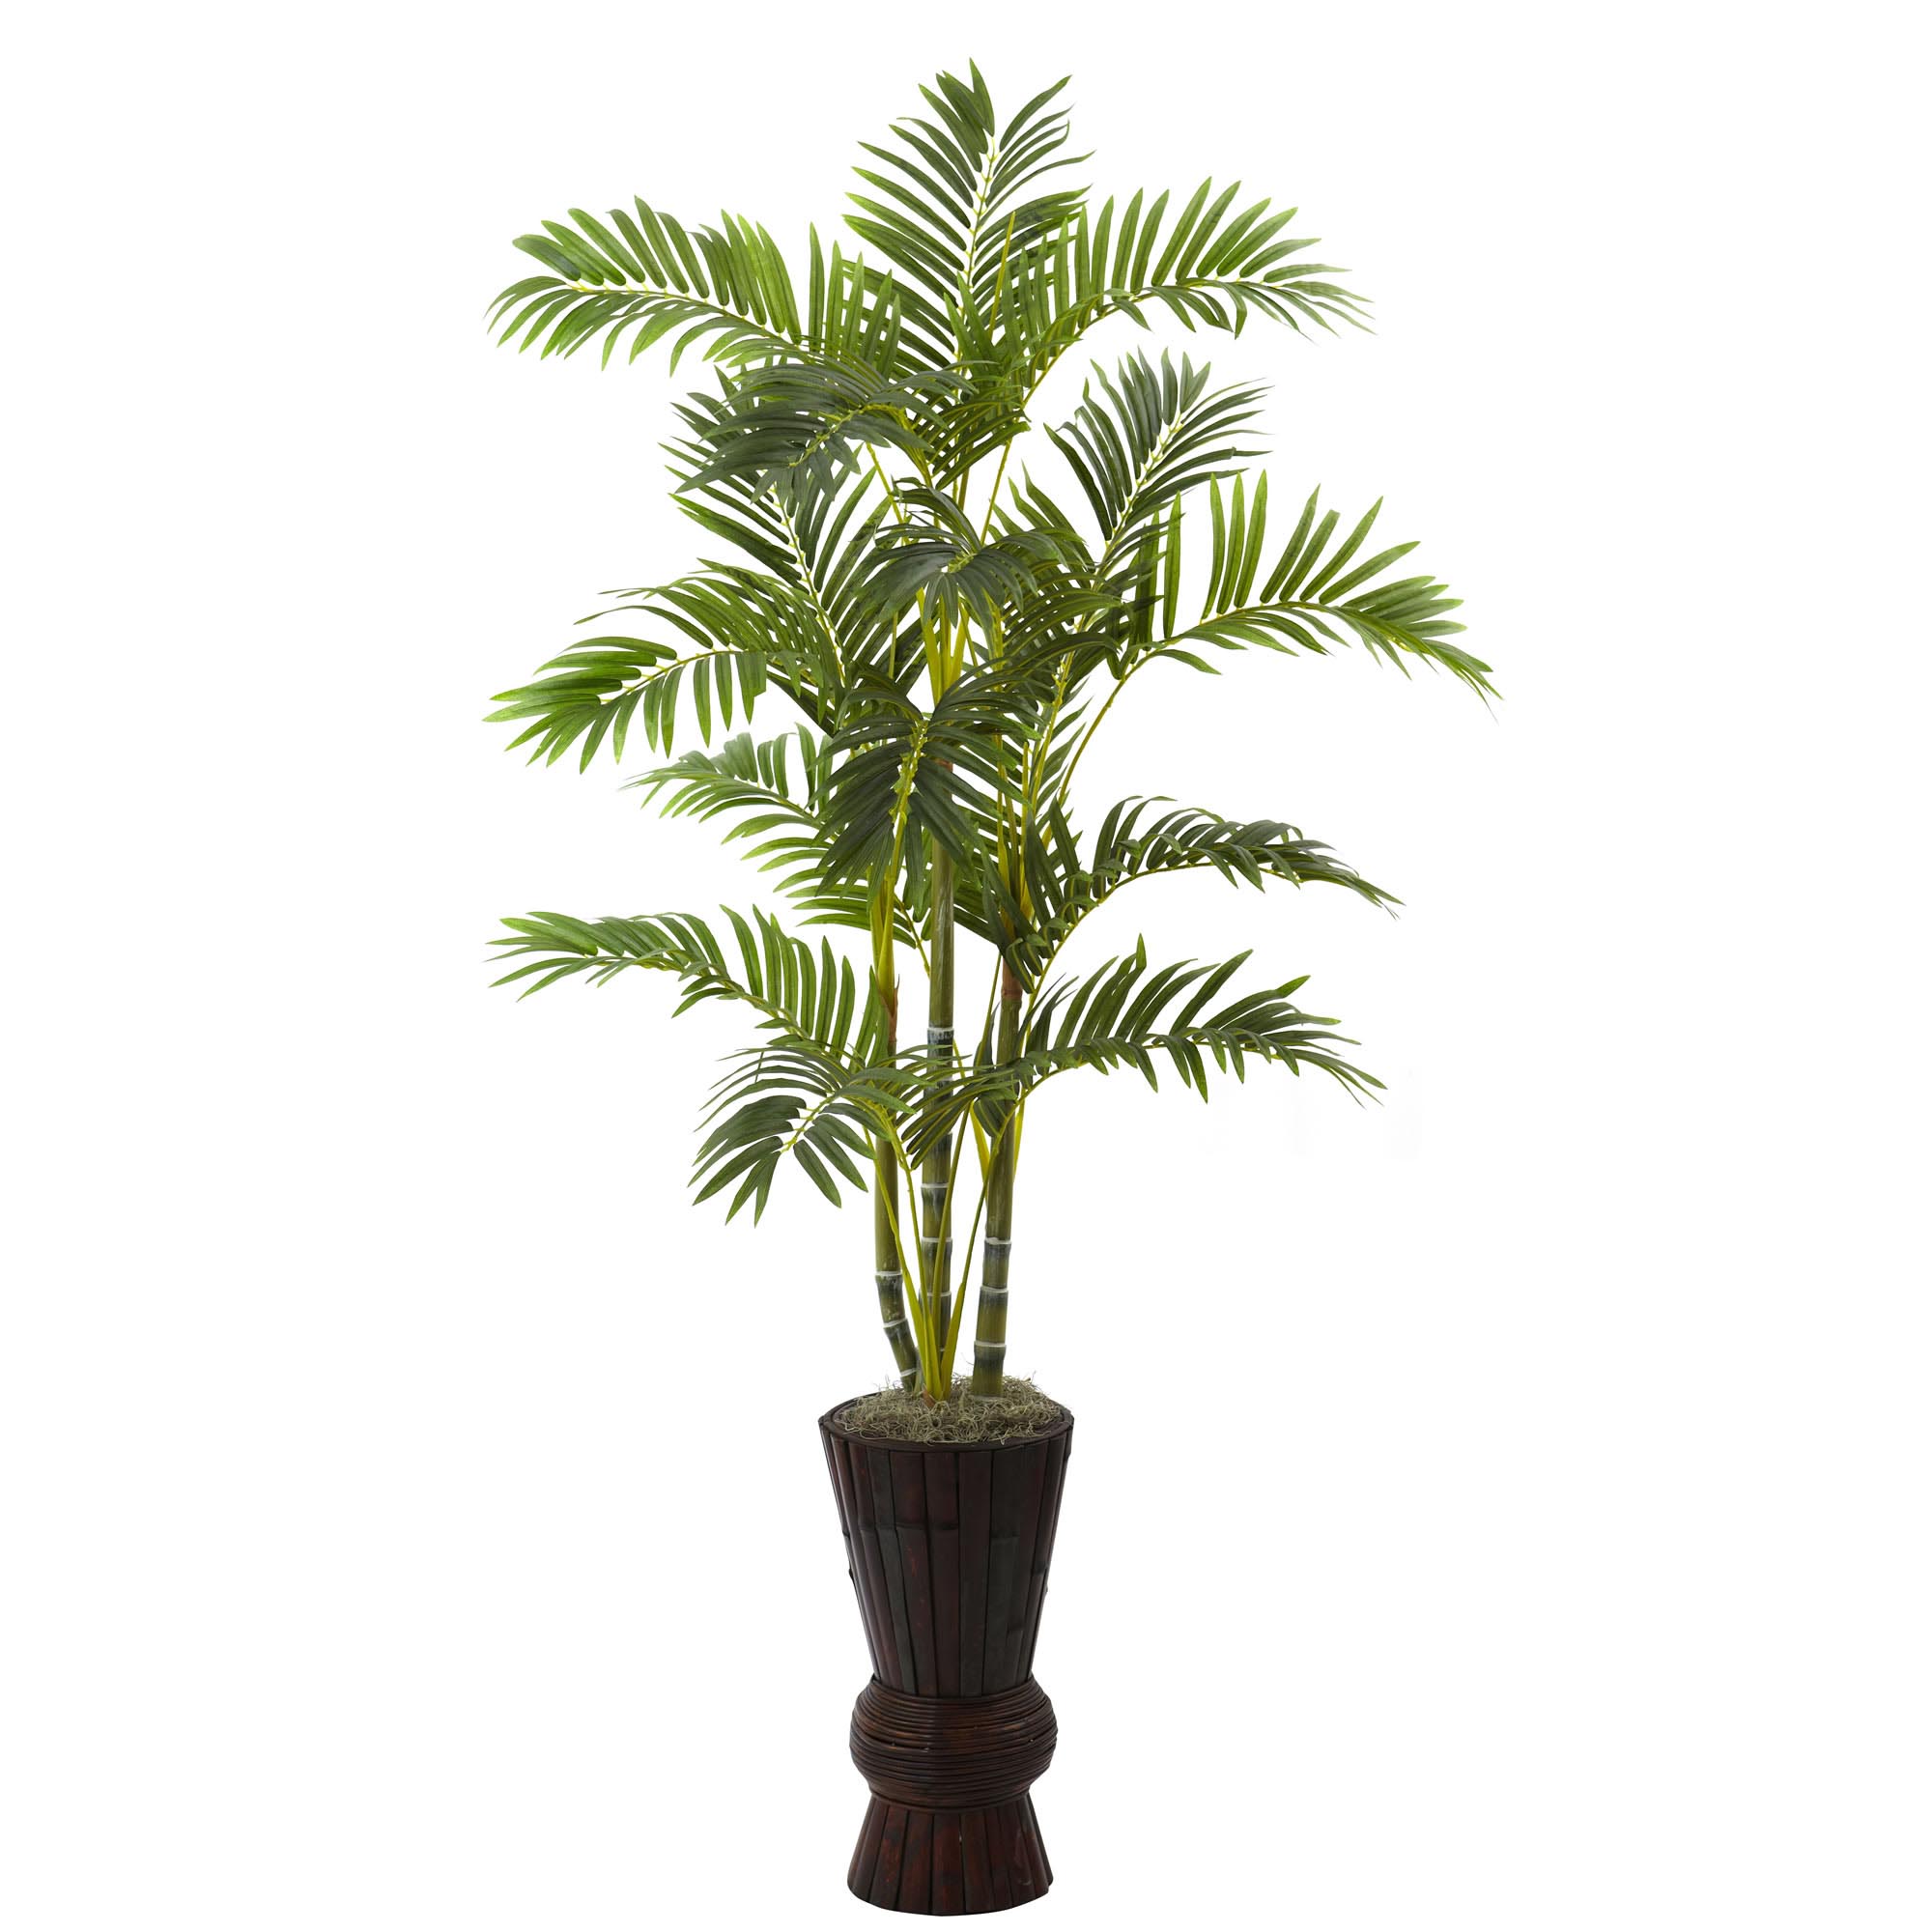 62 inch Artificial Areca Tree in Decorative Planter